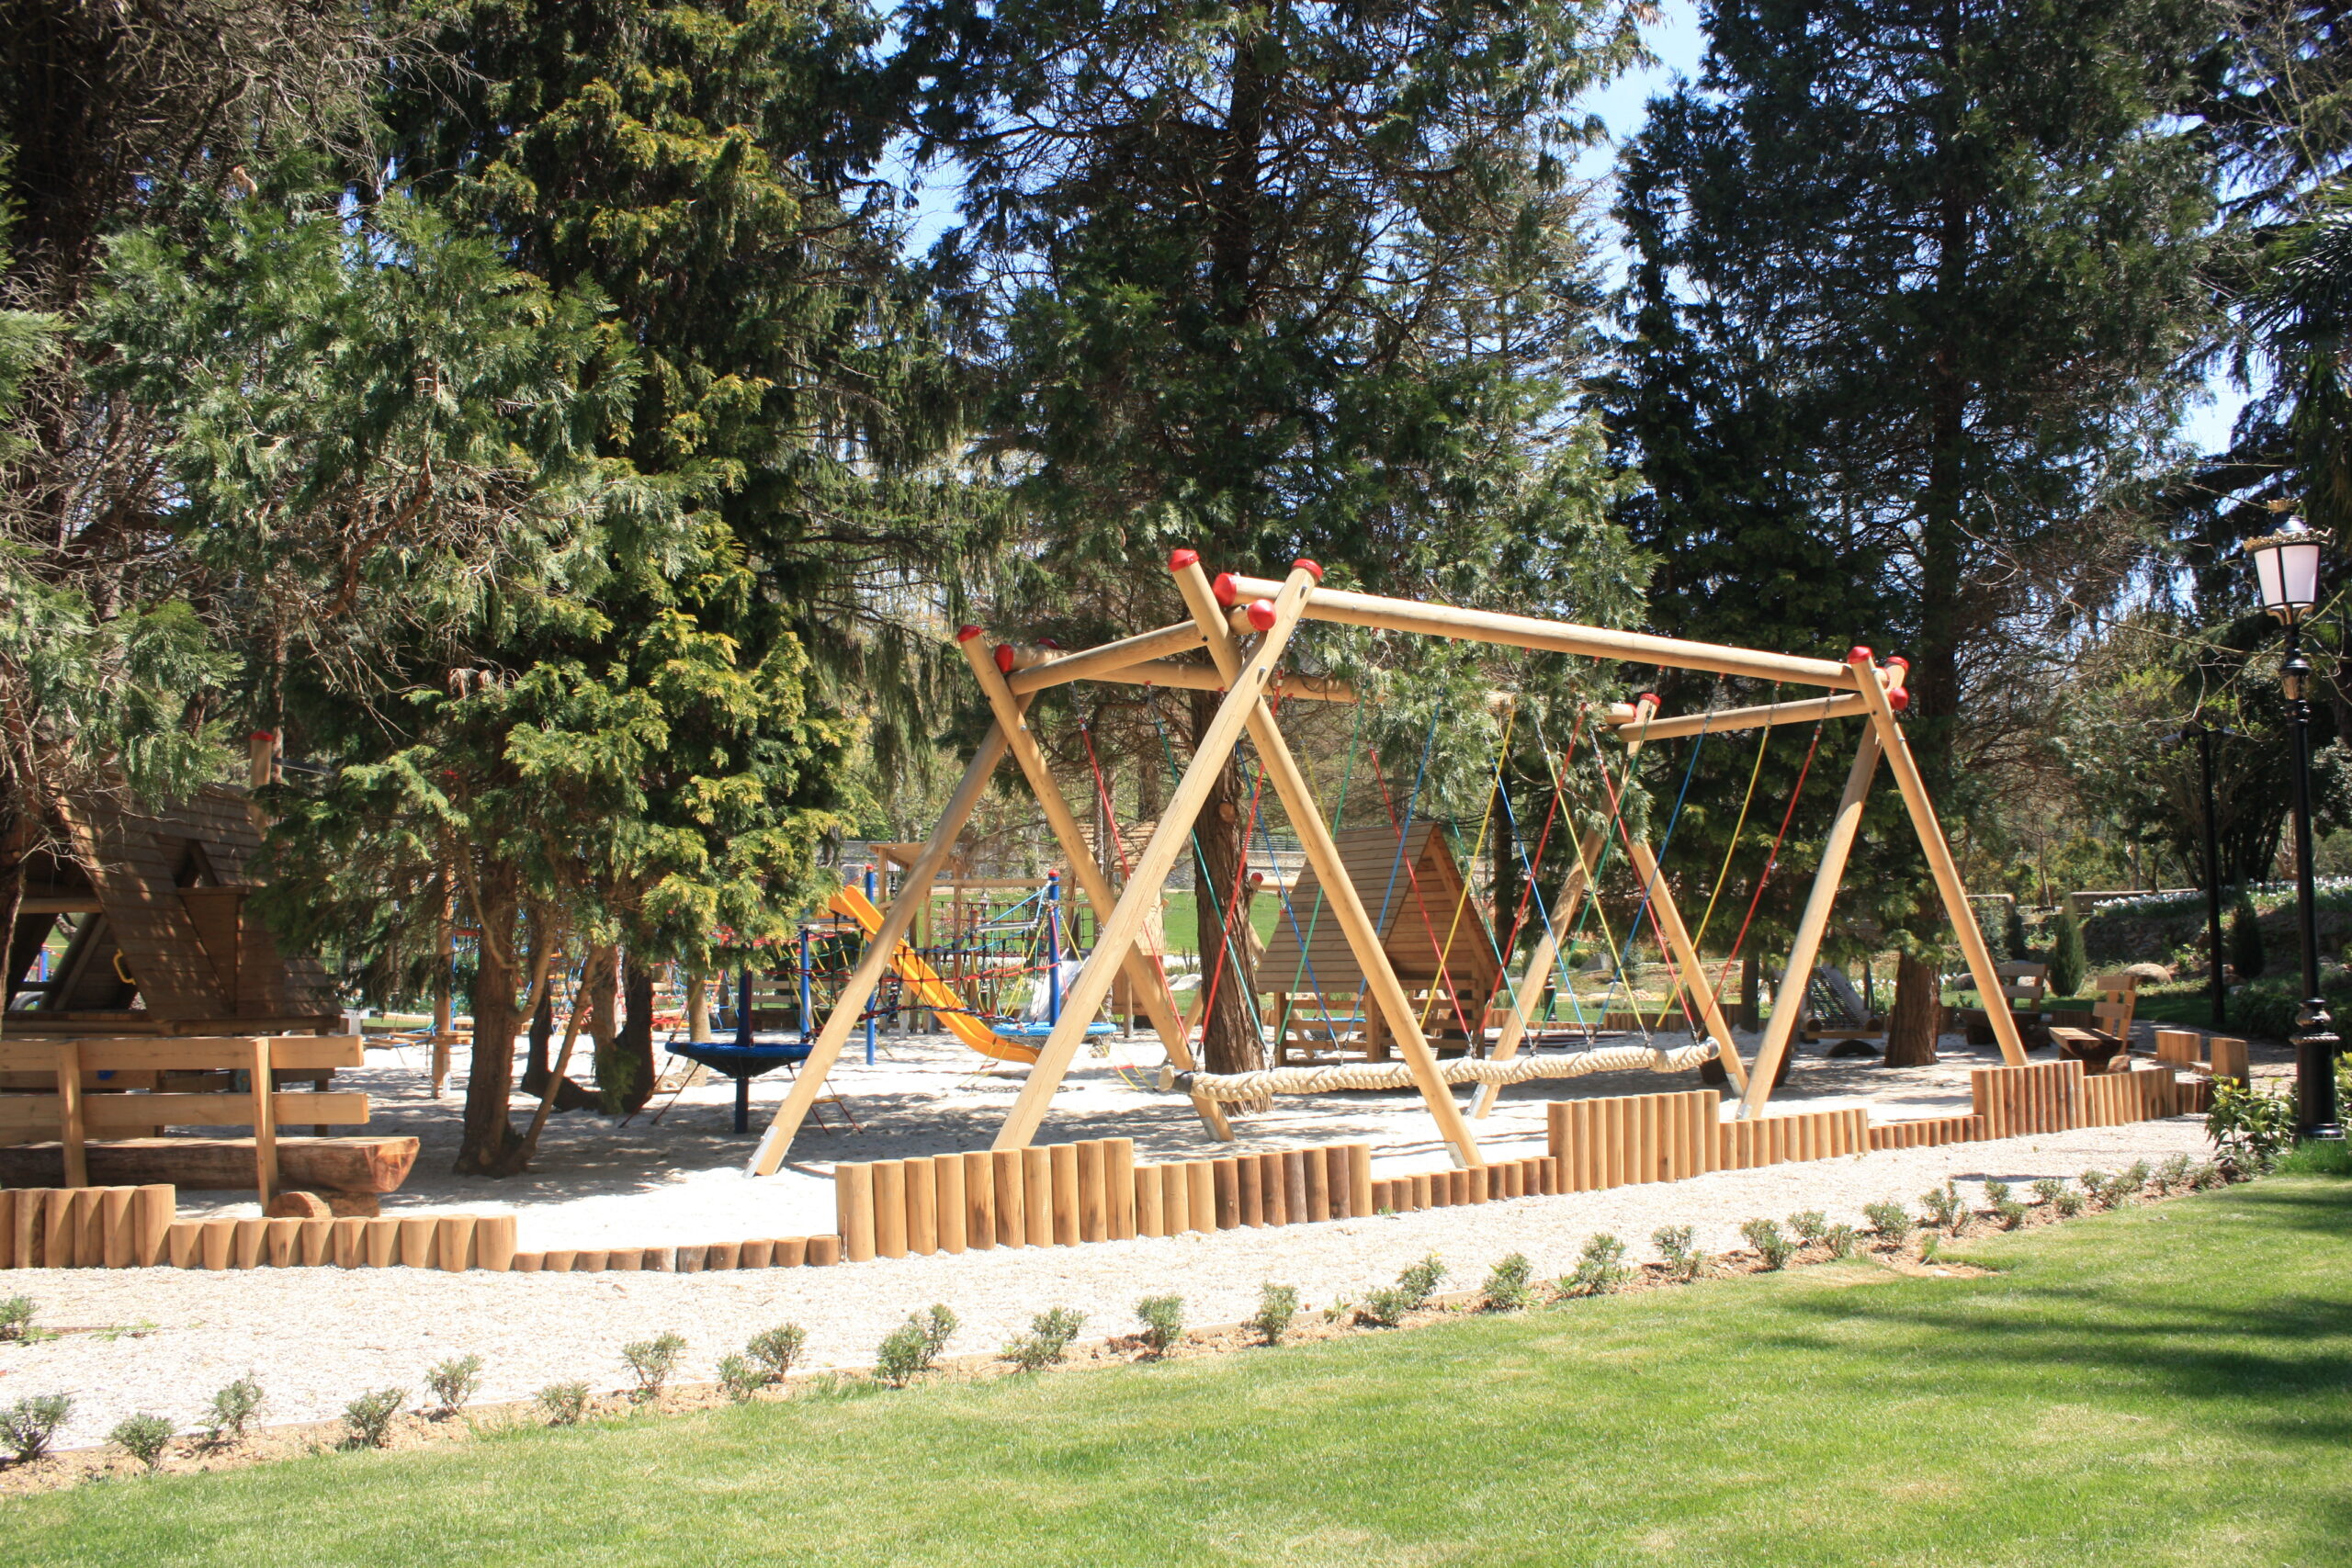 Turkuaz Park | Anasayfa